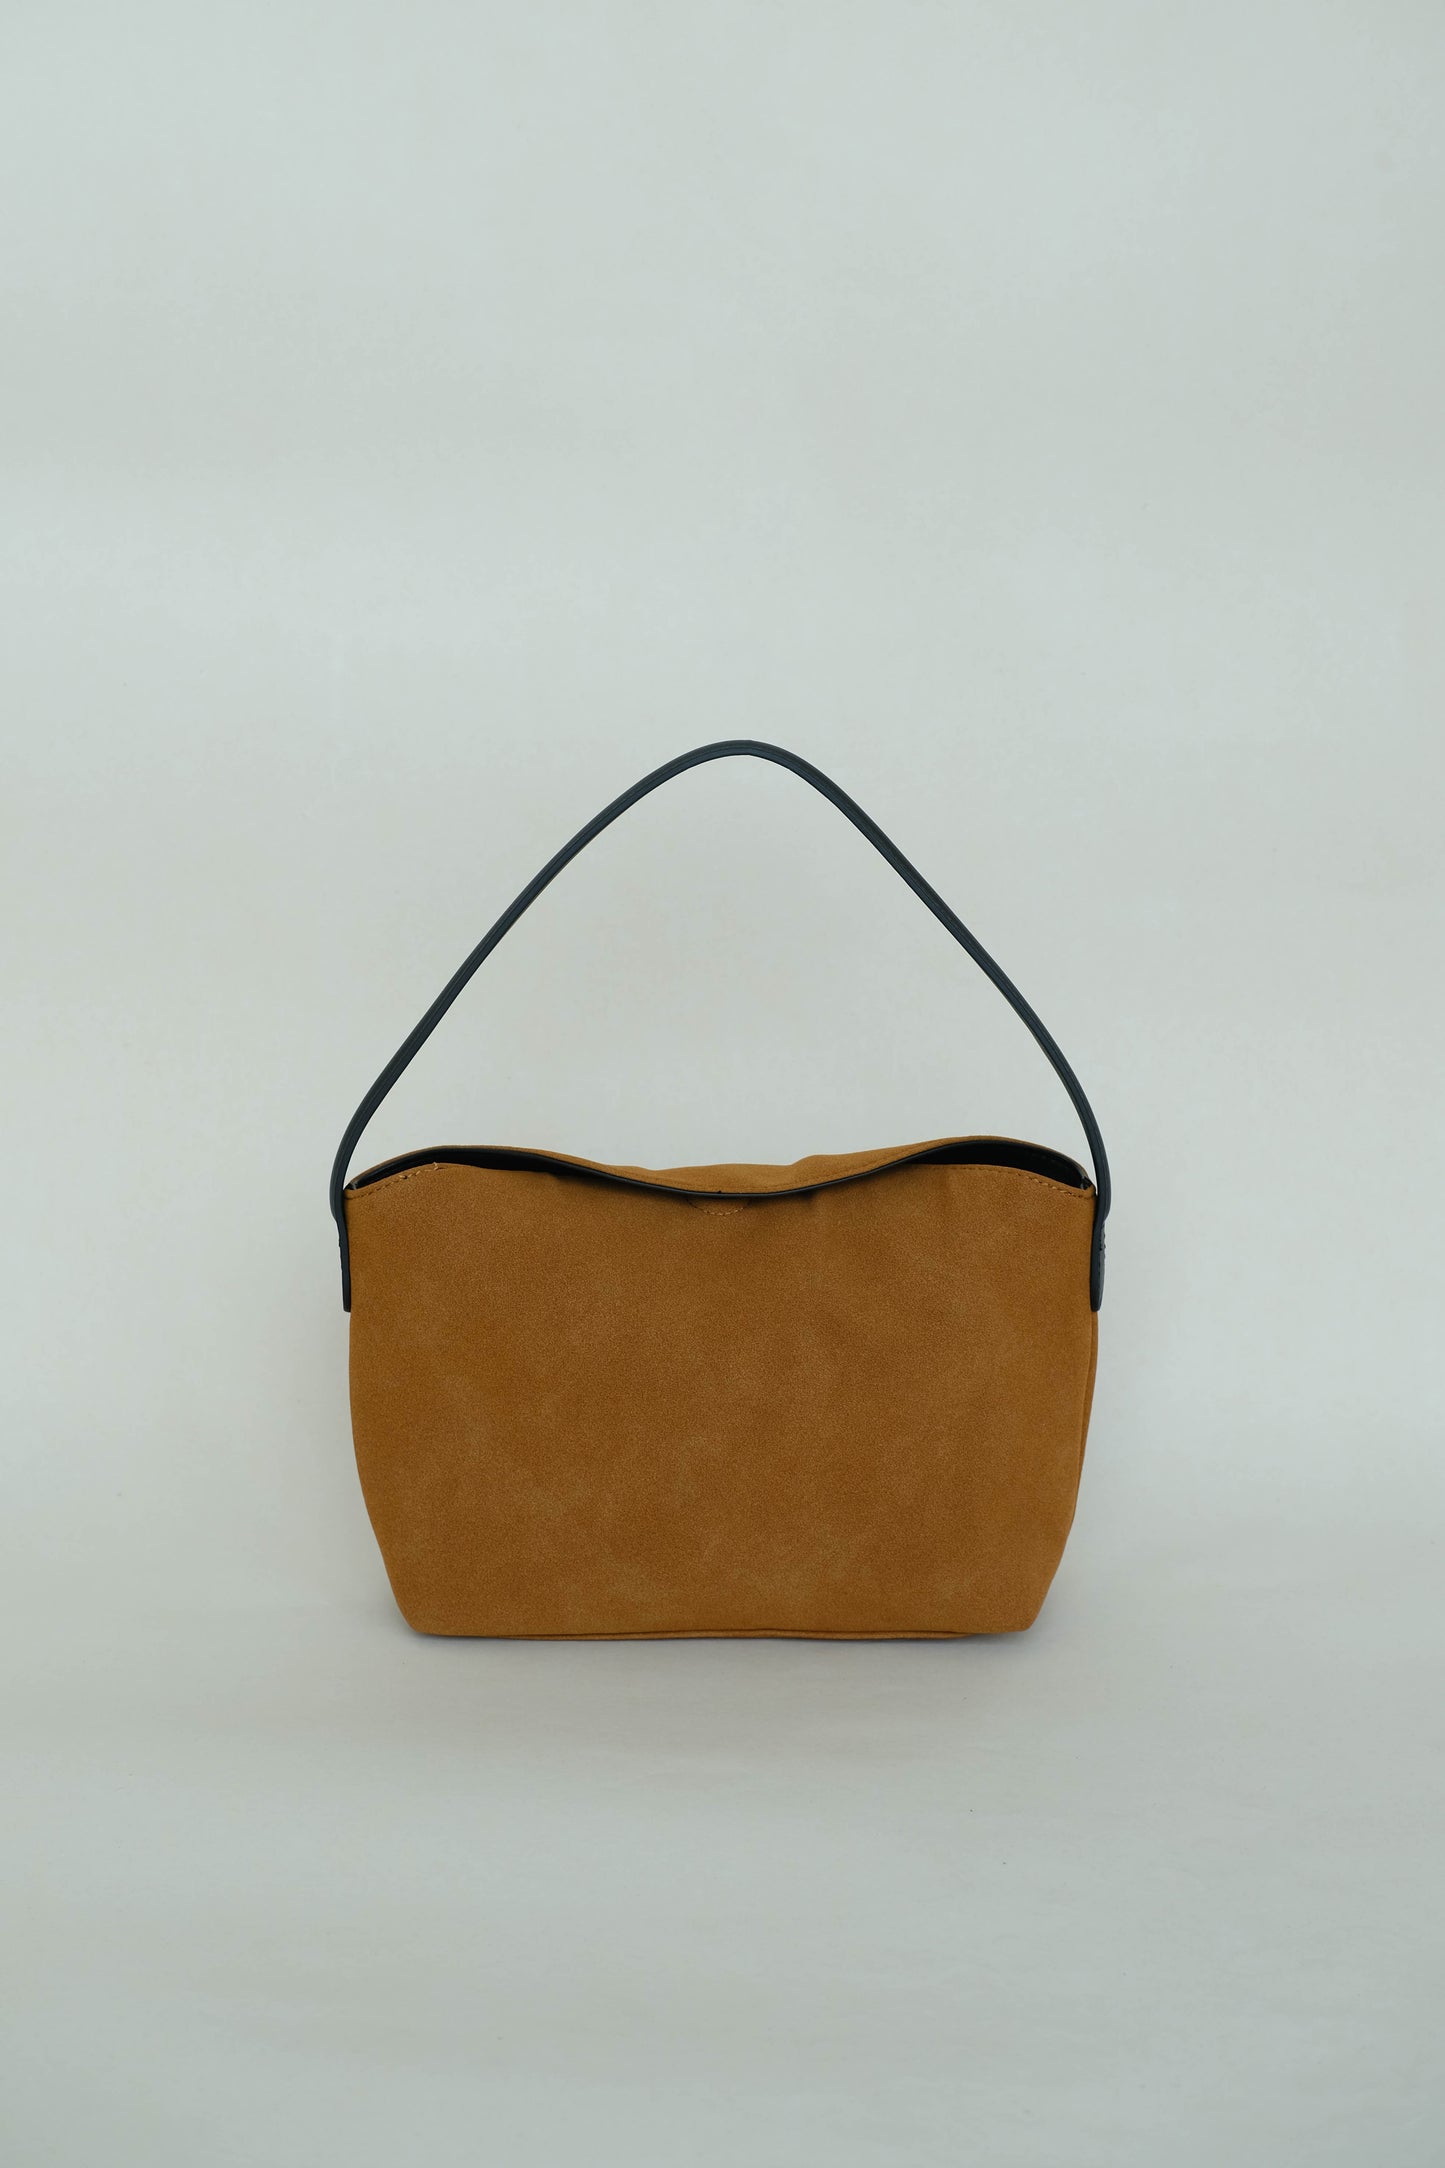 Matte finish single-strap shoulder bag in brown color